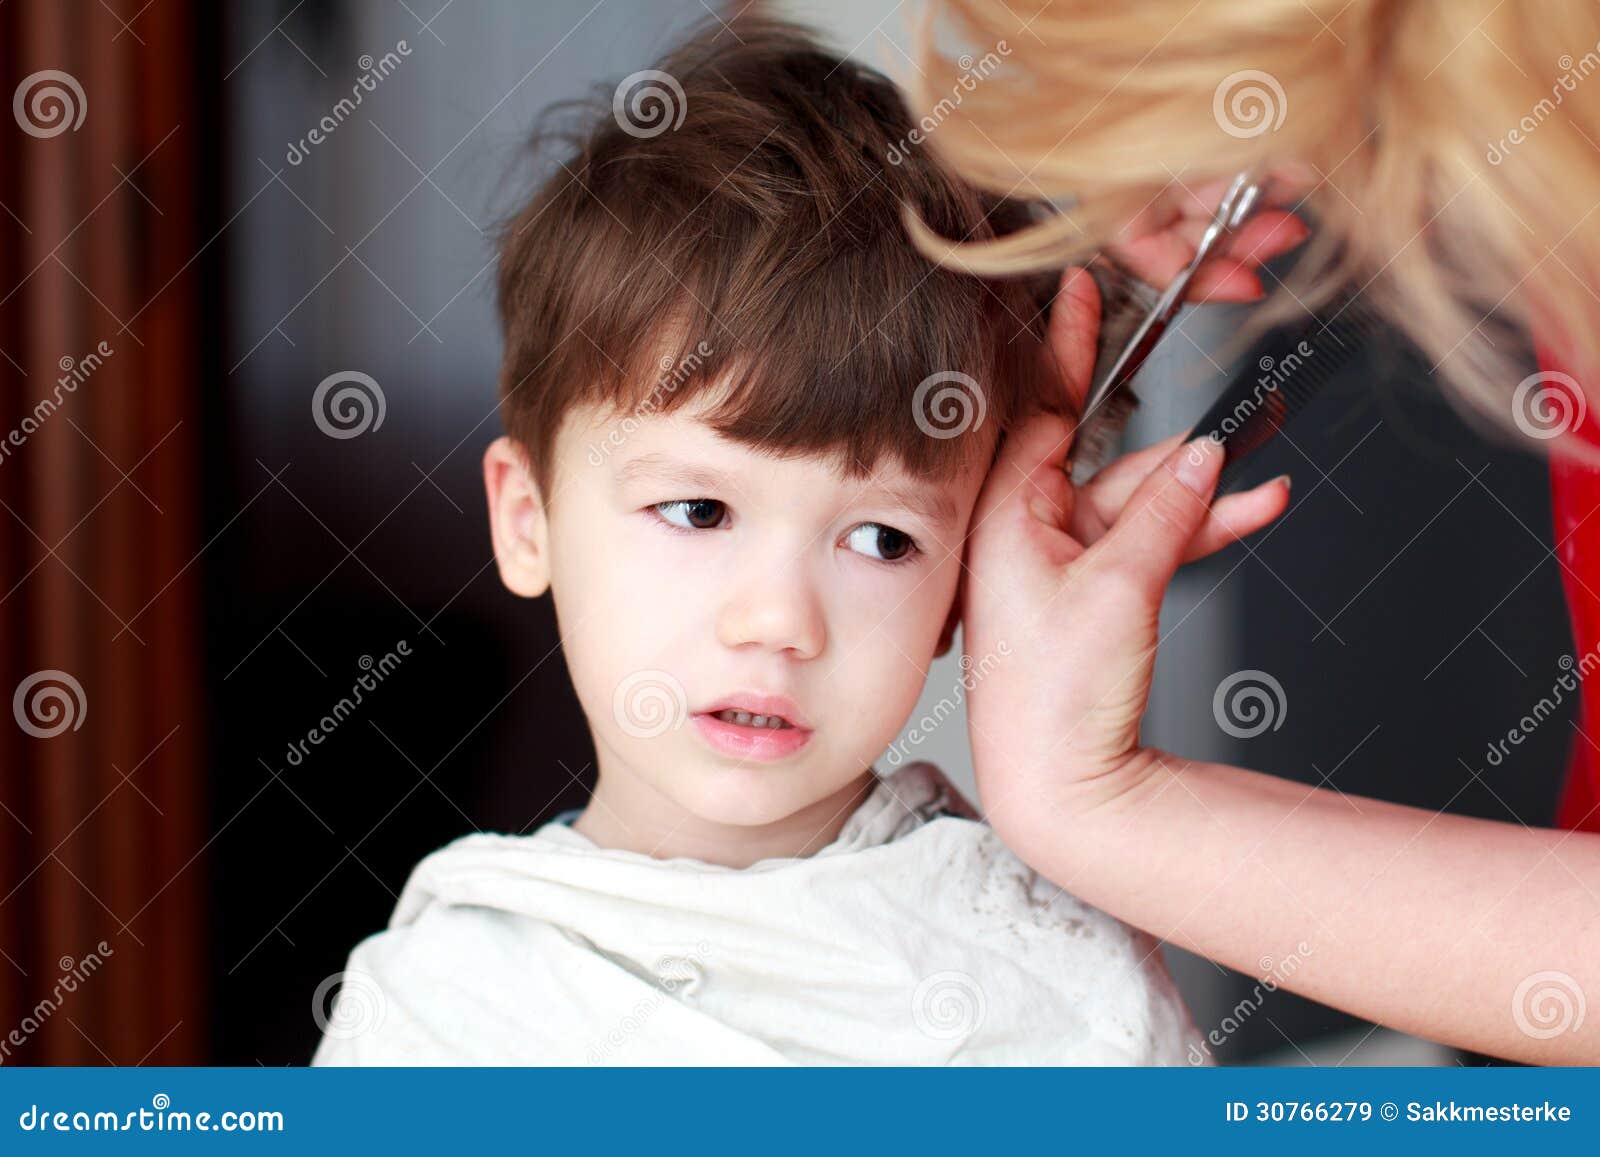 帅气小男孩发型图片,儿童发型男8一9岁寸头 - 伤感说说吧